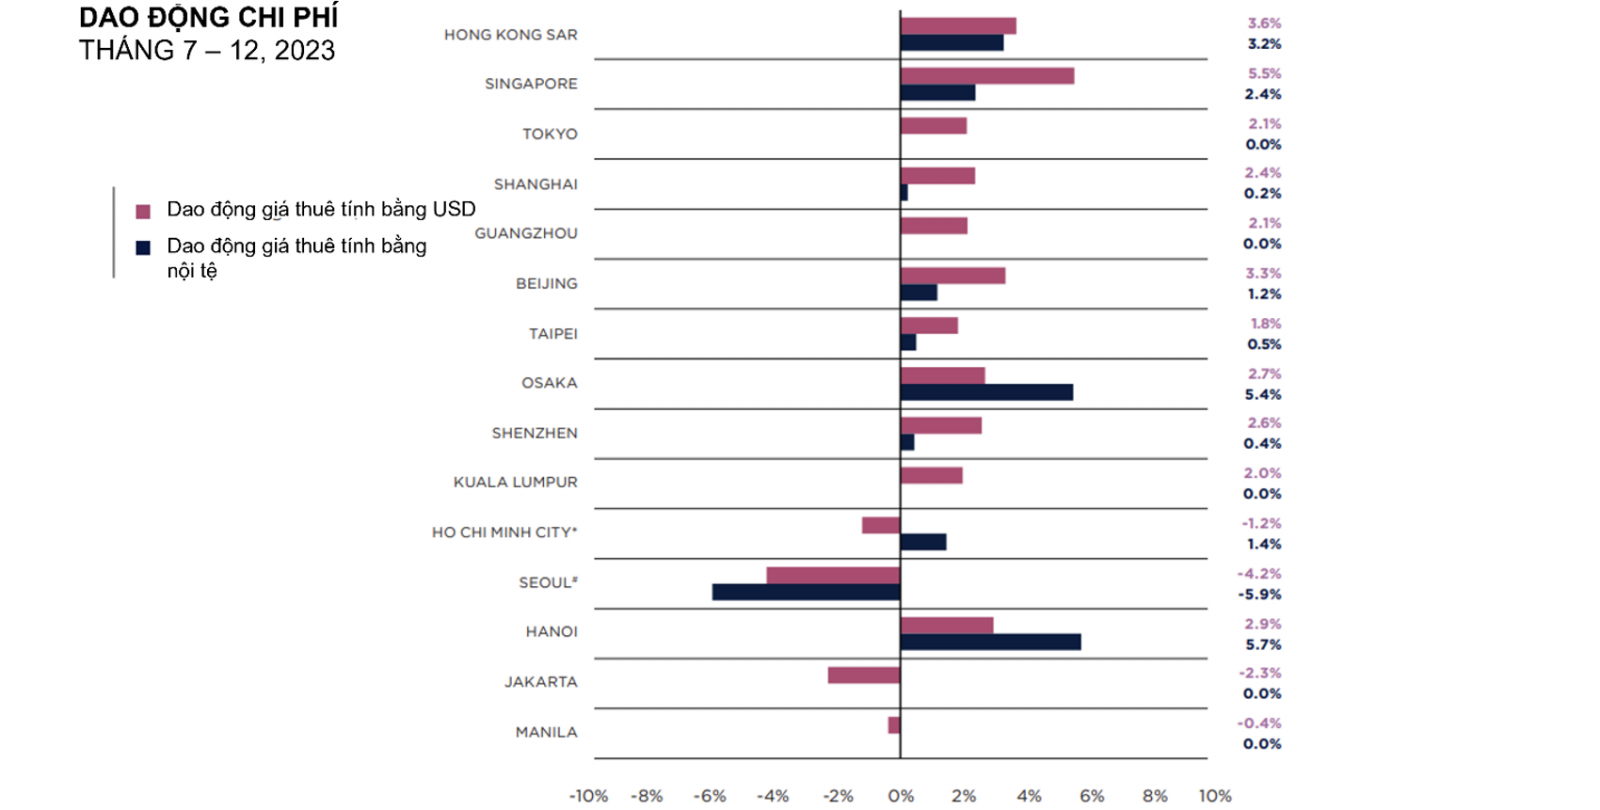 Dao động về chi phí thuê trung tâm thương mại cao cấp tại các thị trường thuộc Châu Á – Thái Bình Dương (Tháng 7-12/2023)